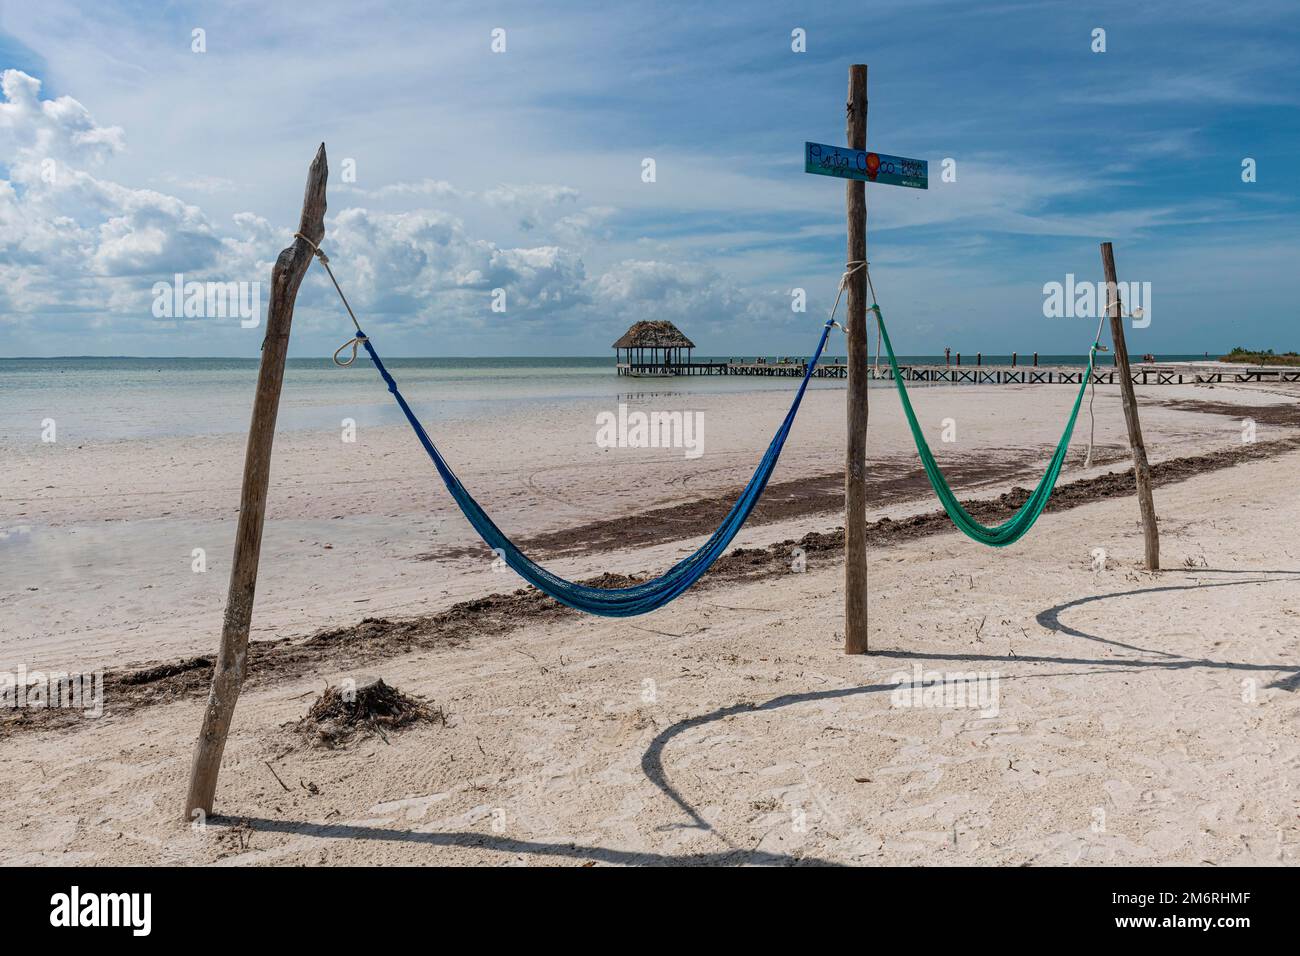 Balancez sur une plage de sable blanc, île de Holbox, Yucatan Mexique Banque D'Images